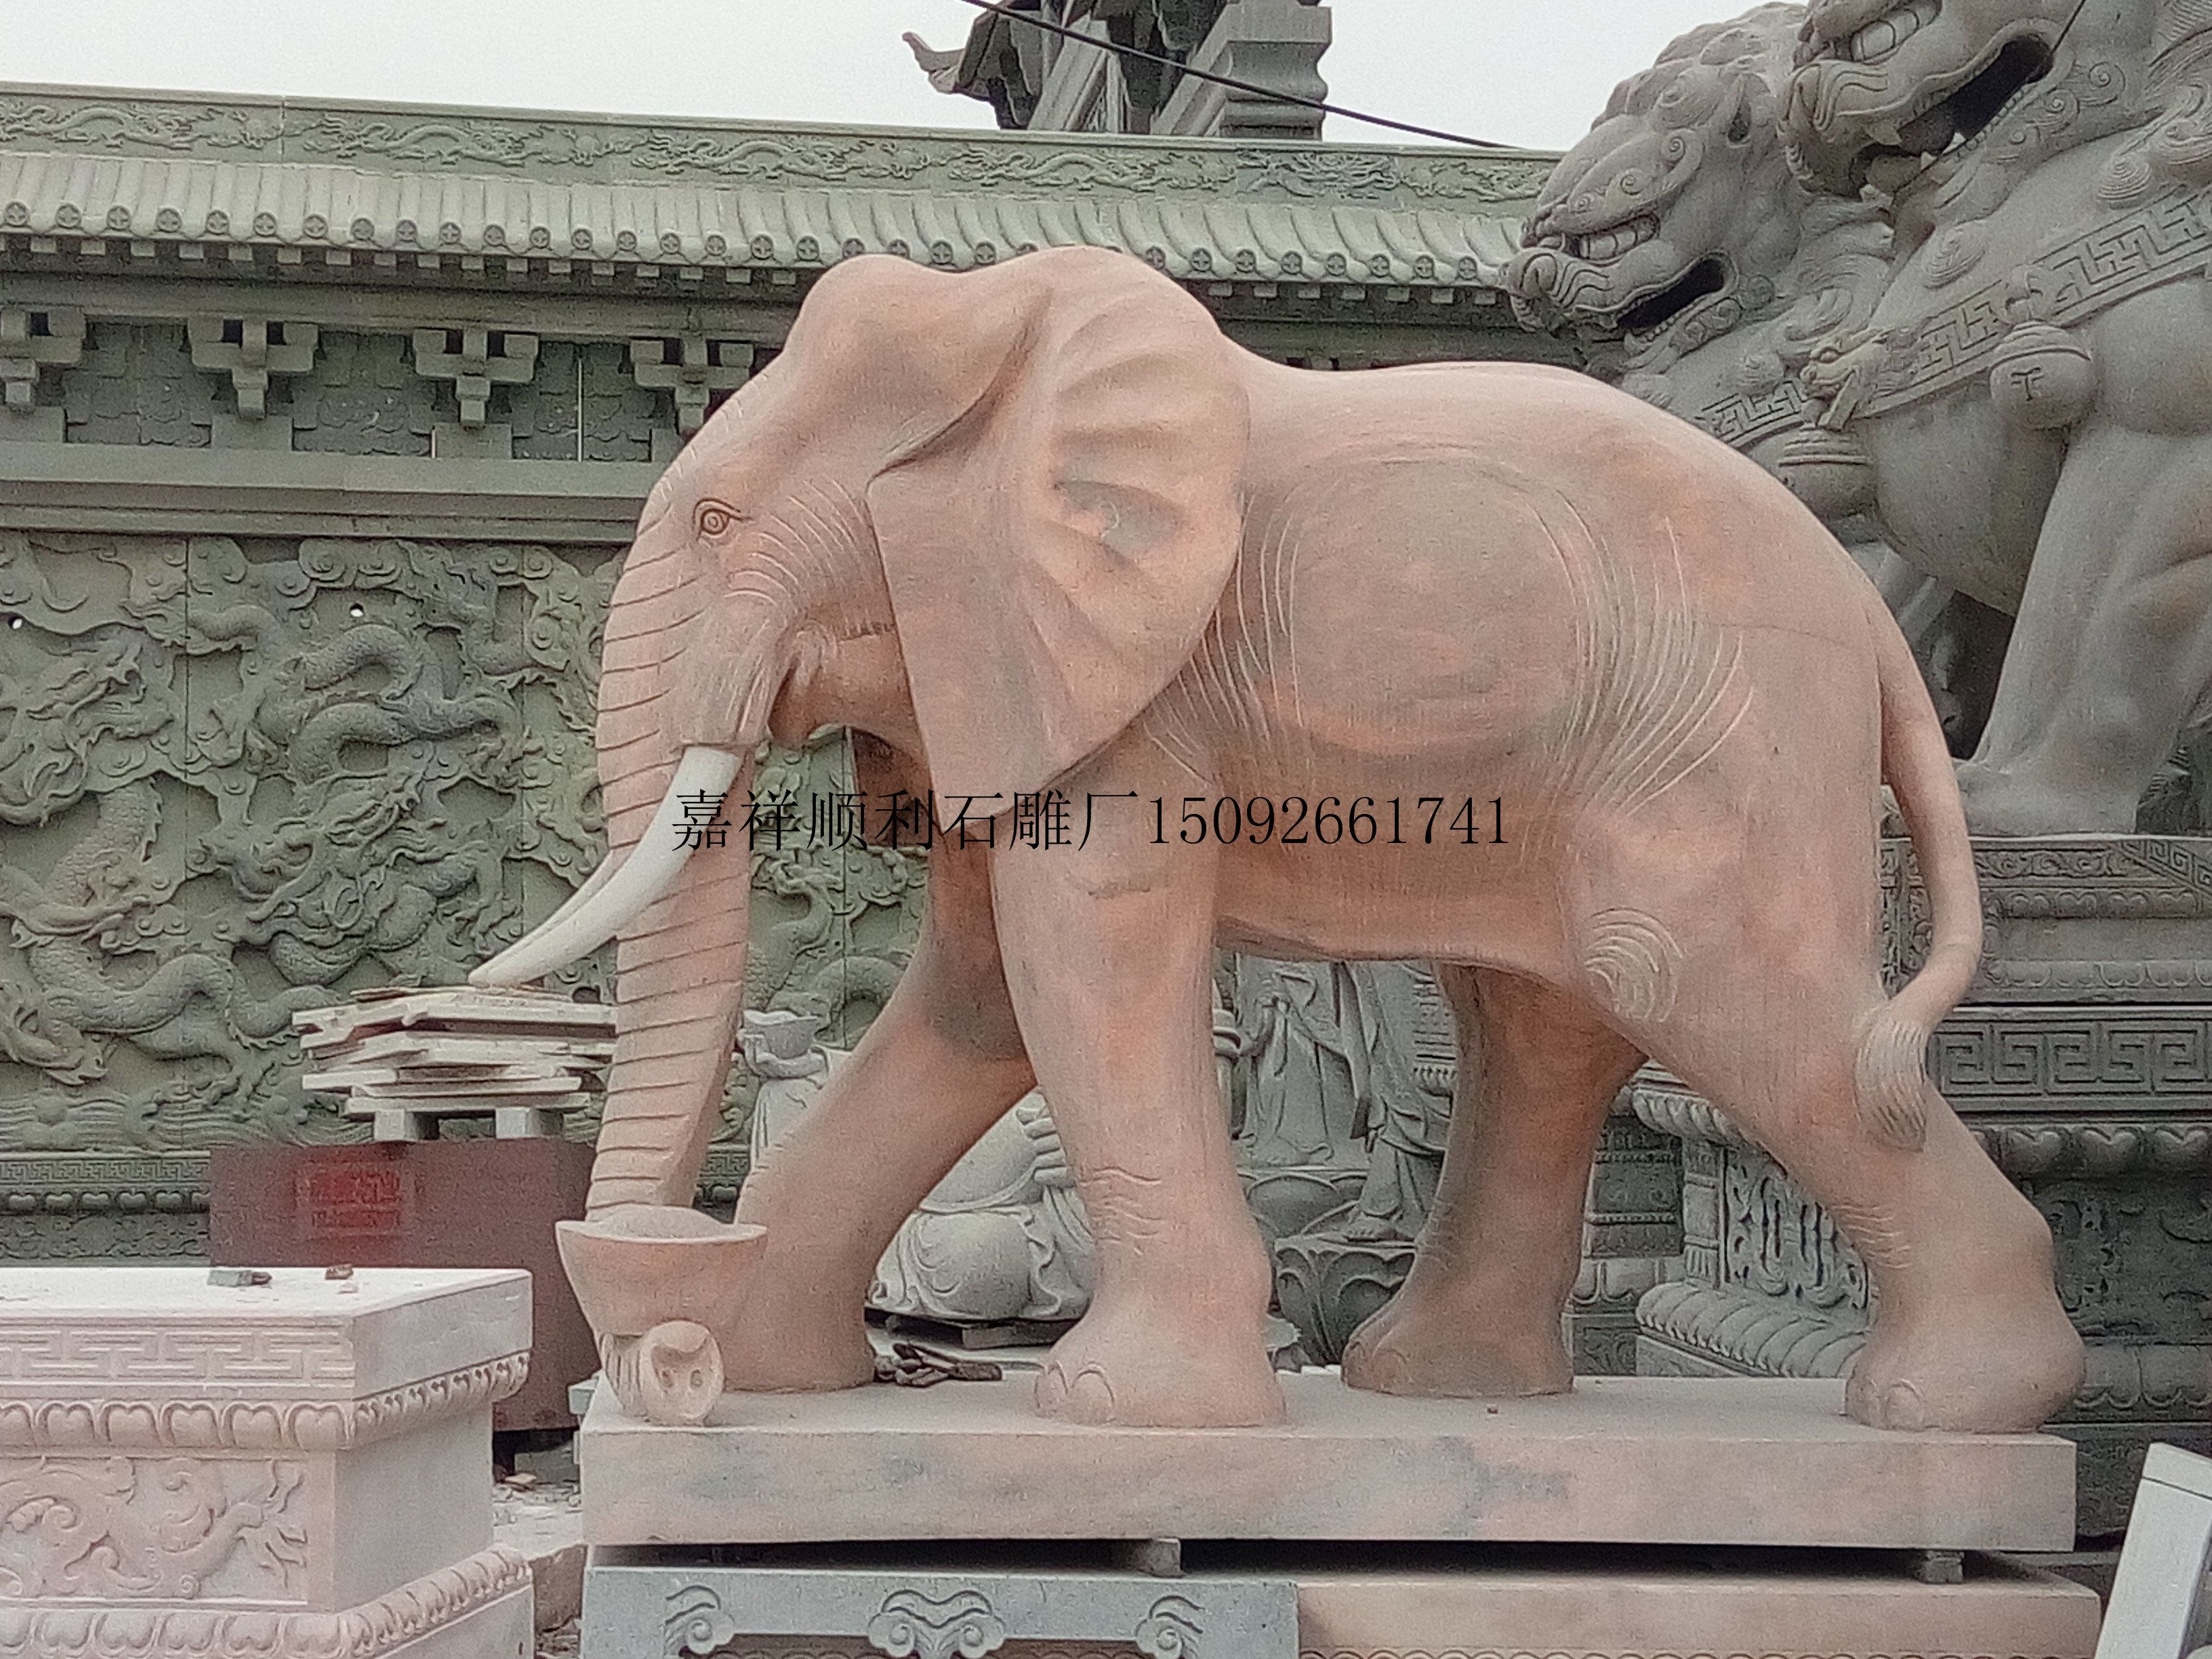 石雕大象石大象喷水石大象大象图片石雕大象的价格石雕精美石雕大象图片